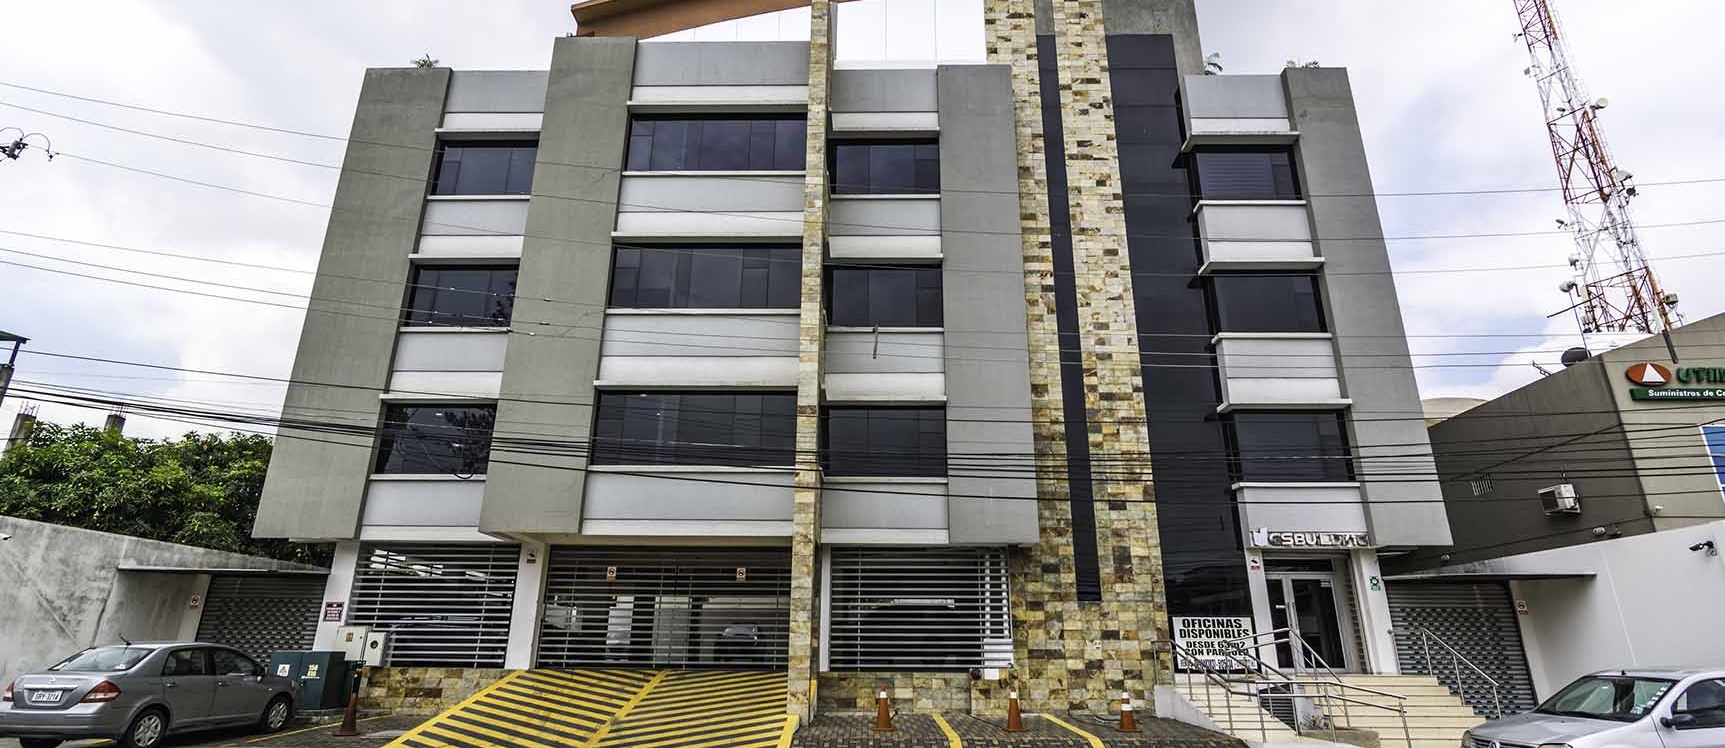 GeoBienes - Oficina en alquiler Edificio GS Building, Norte de Guayaquil - Plusvalia Guayaquil Casas de venta y alquiler Inmobiliaria Ecuador